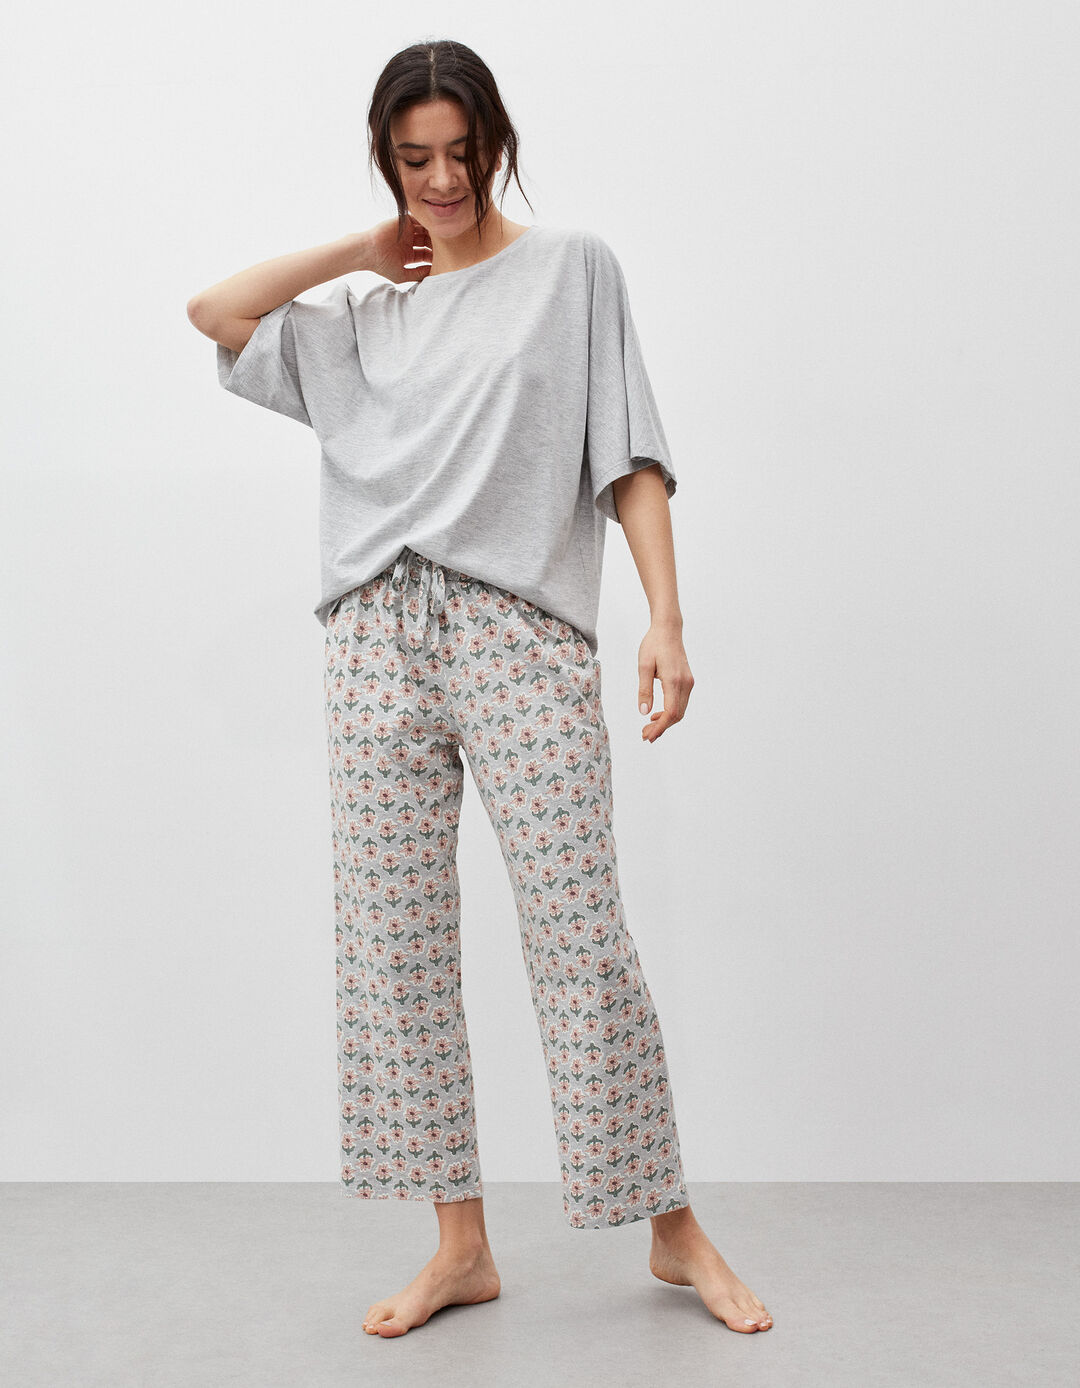 Pajamas, Woman, Light Gray